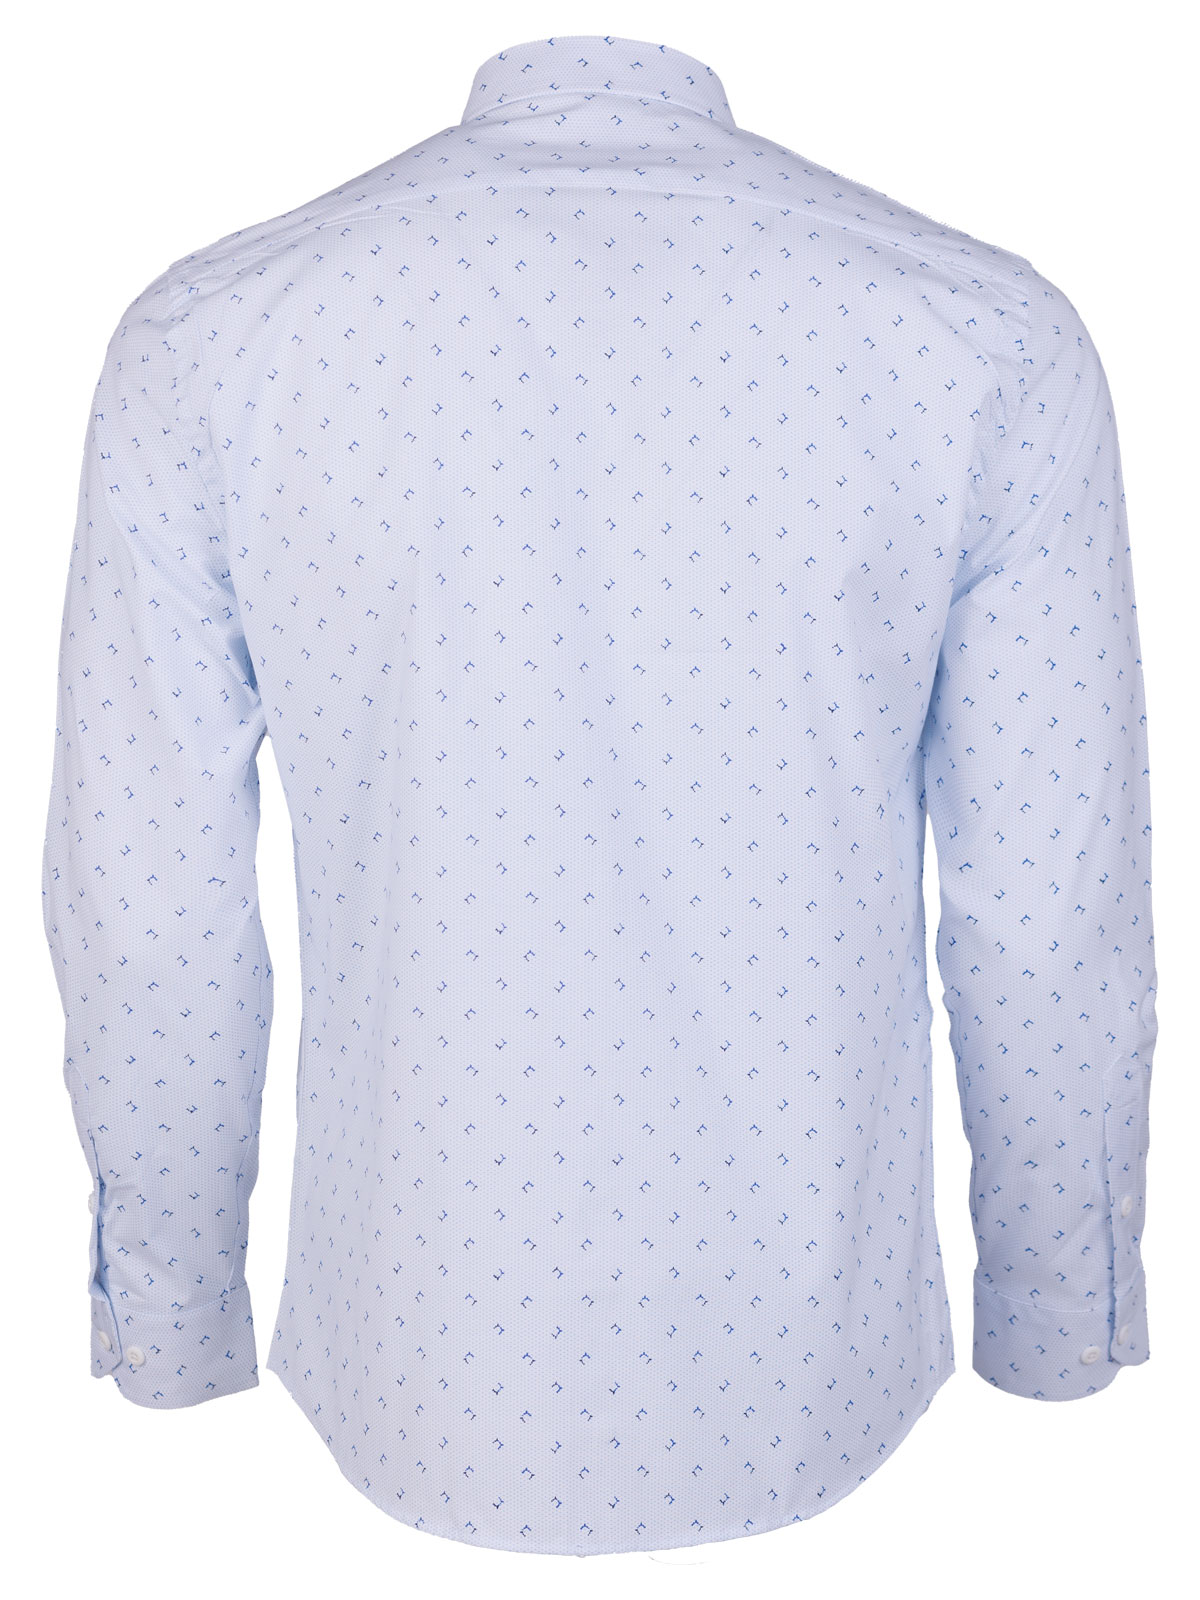 Бяла риза със сини точки max - 21602 79.00 лв img2